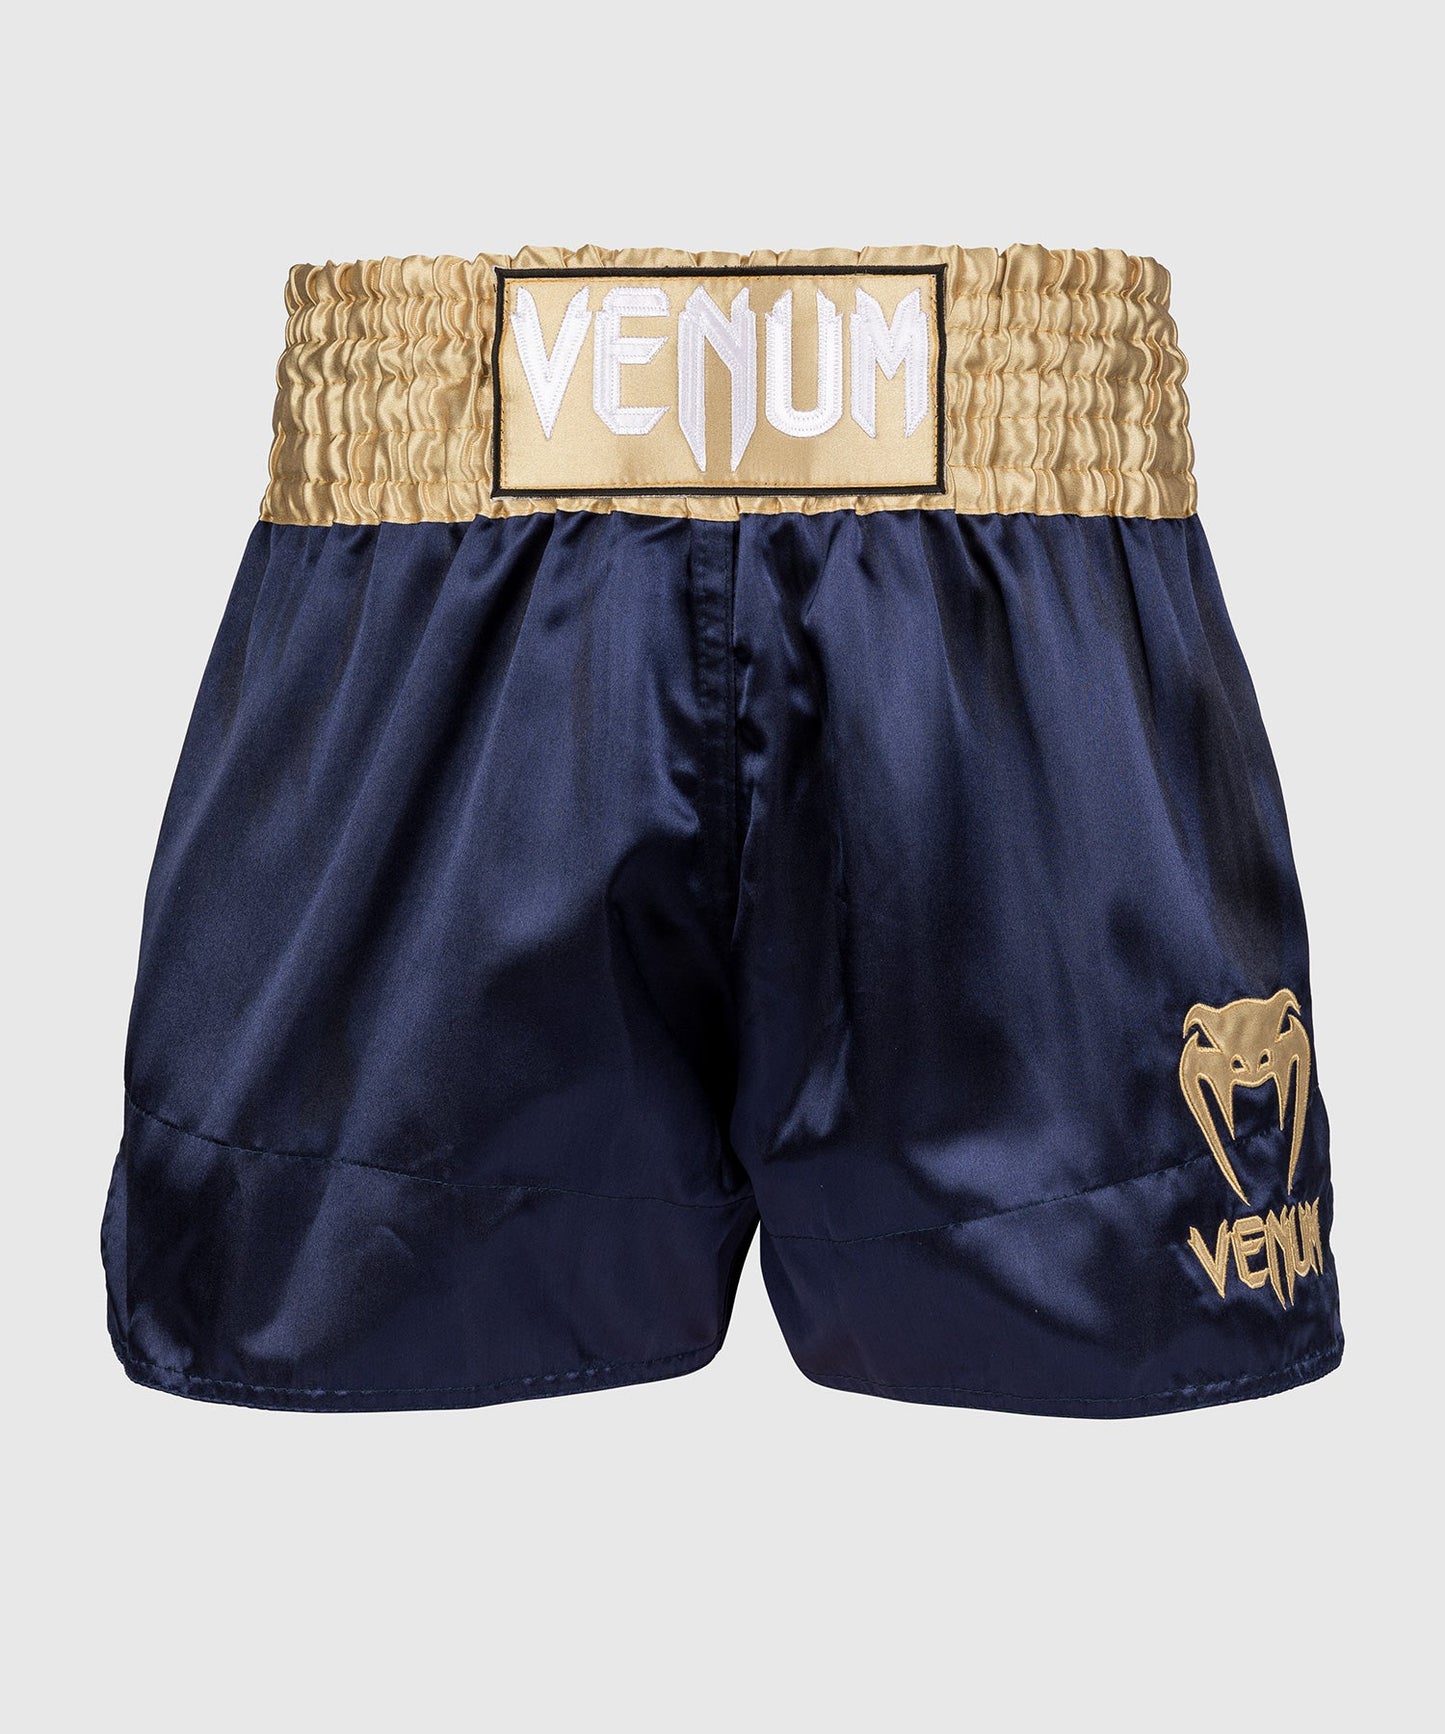 Venum Classic Muay Thai Shorts - Marineblauw/Goud